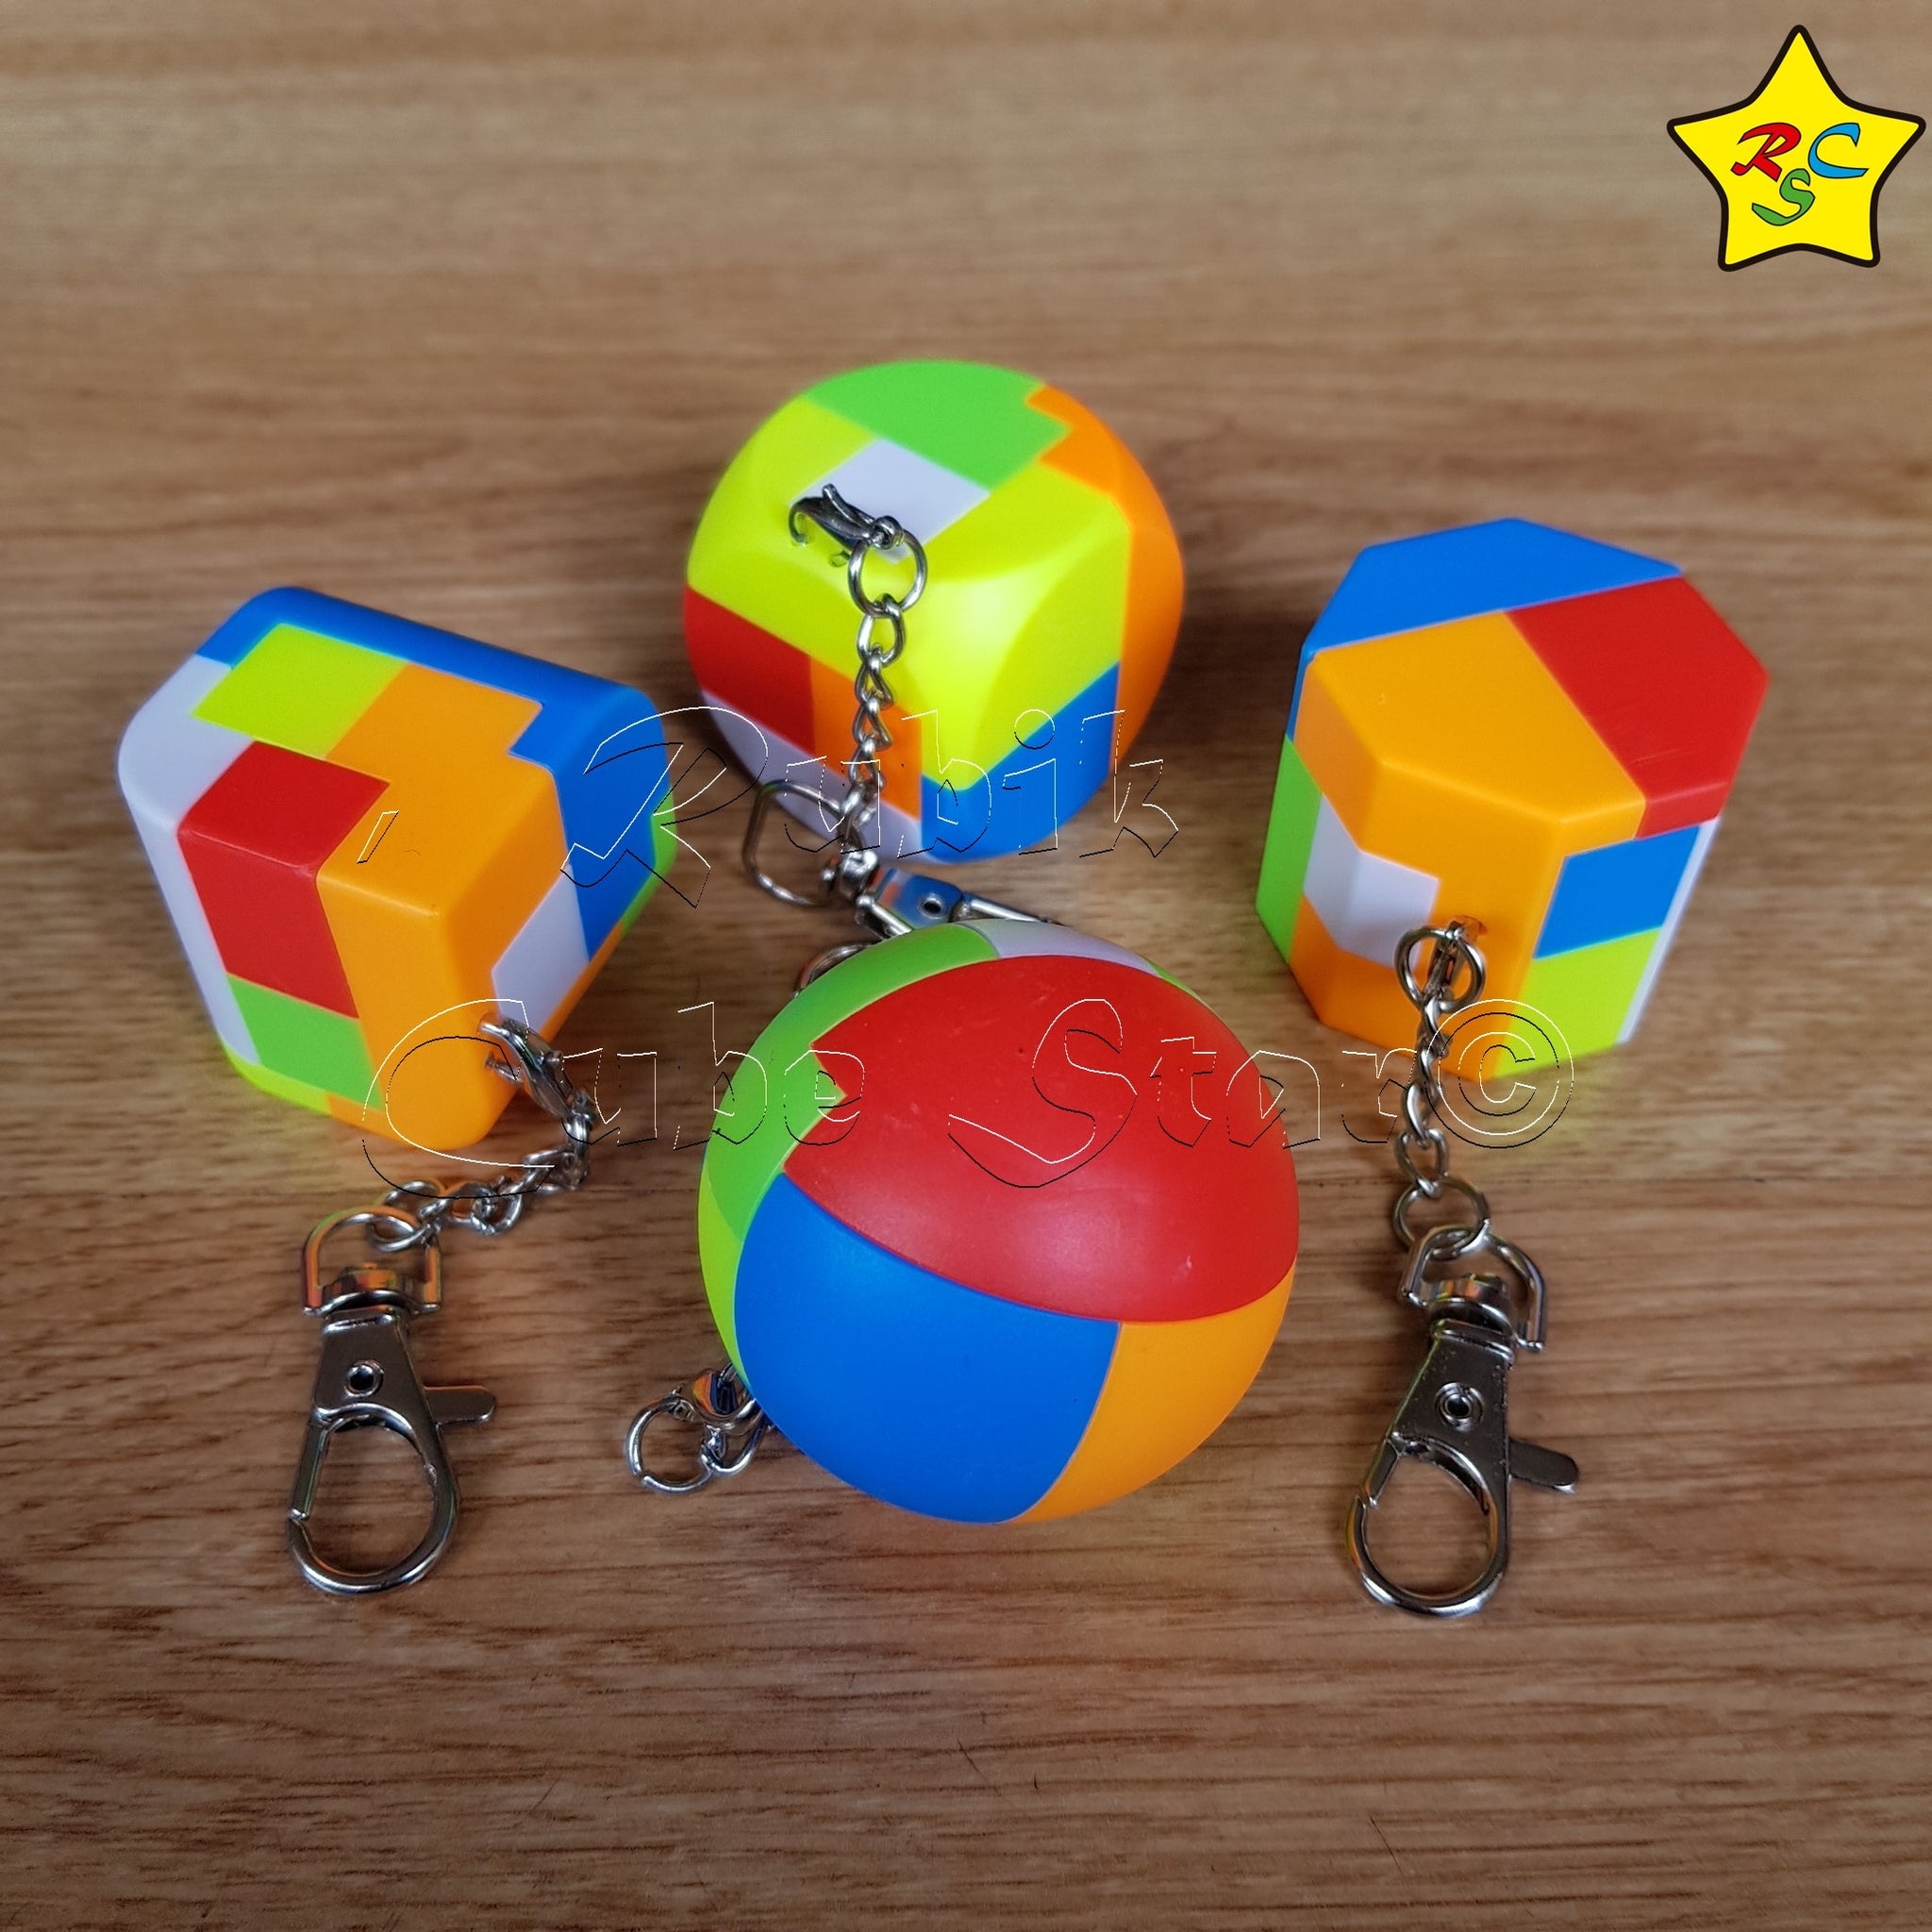 Puzzle Armar Encajar Piezas Rompecabeza Esfera Rubik Cube Star